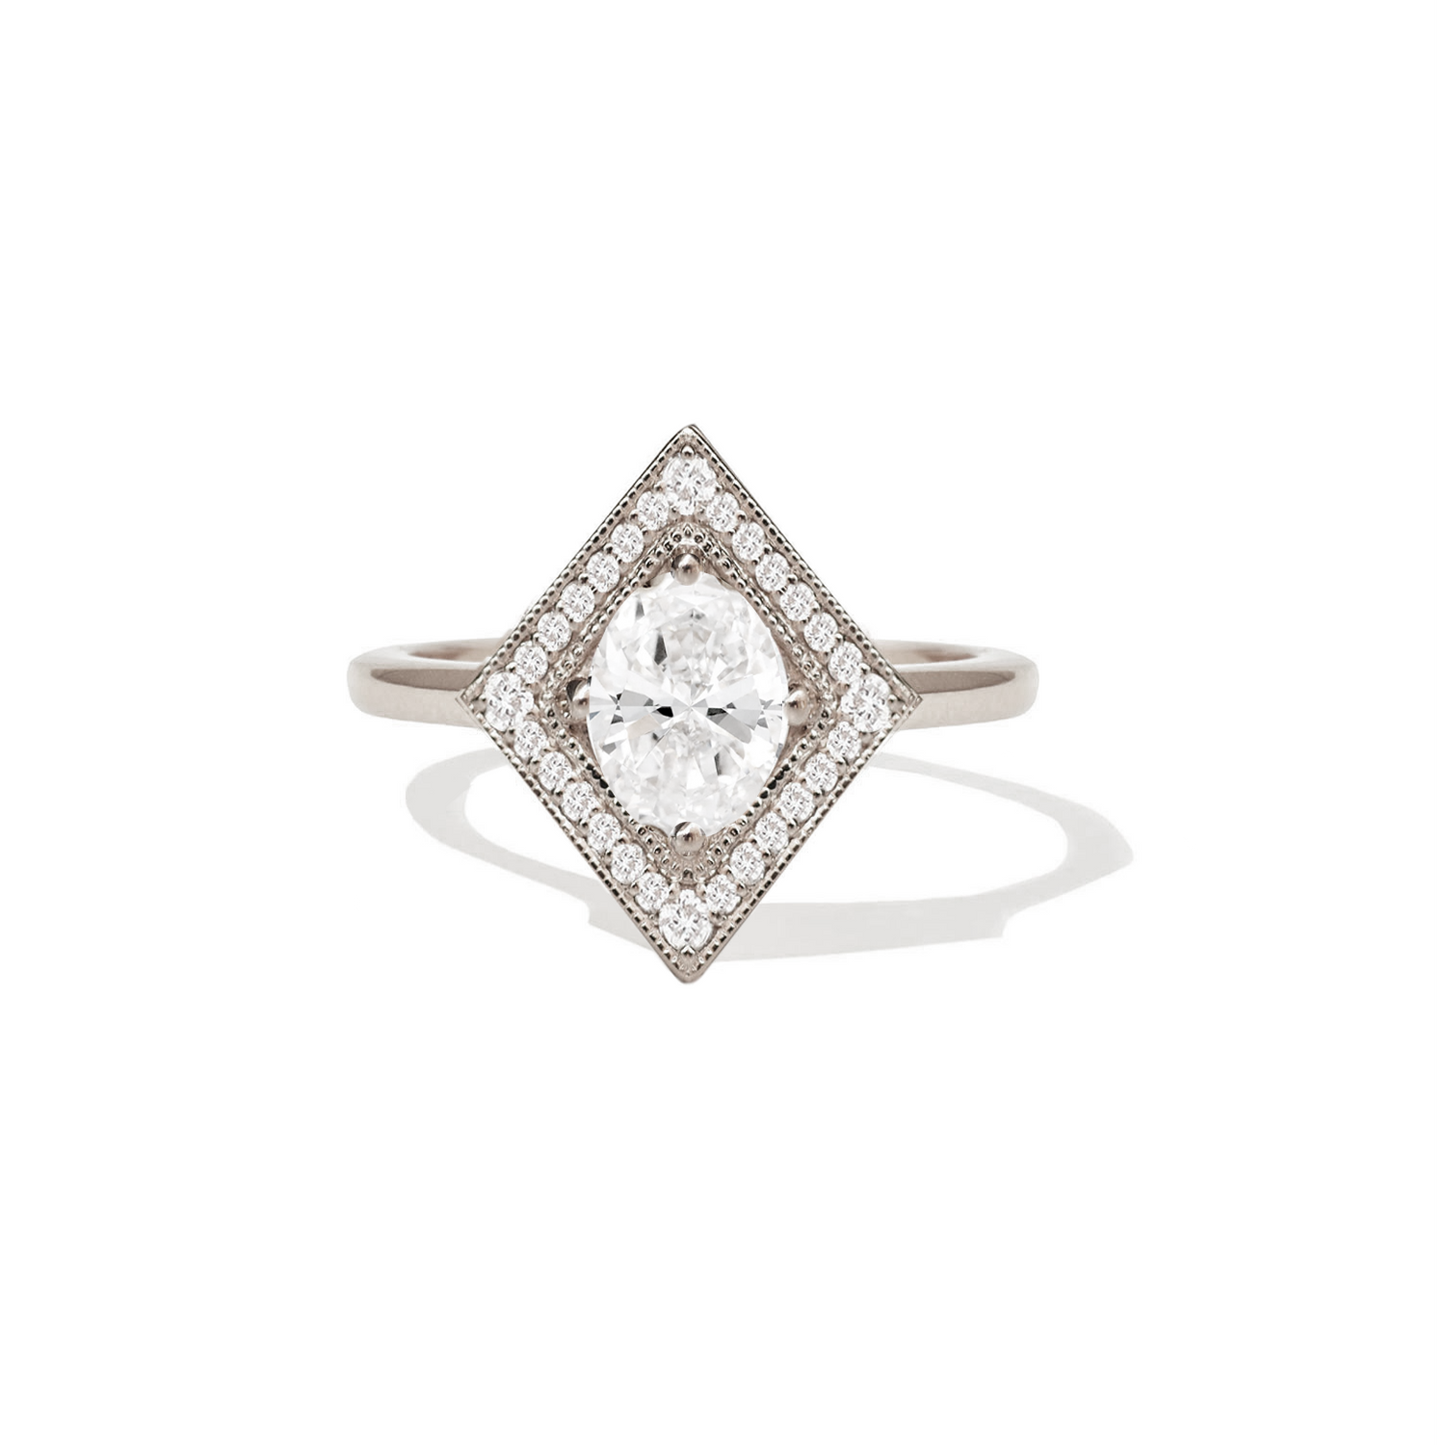 Nhẫn kim cương hình trái xoan với cắt Brilliant của Berlinger Jewelry cho thấy sự tinh tế và sang trọng của thương hiệu. Với một lượng kim cương lớn và cắt sáng, chiếc nhẫn này sẽ chắc chắn trở thành một món quà tuyệt vời cho người đặc biệt của bạn.